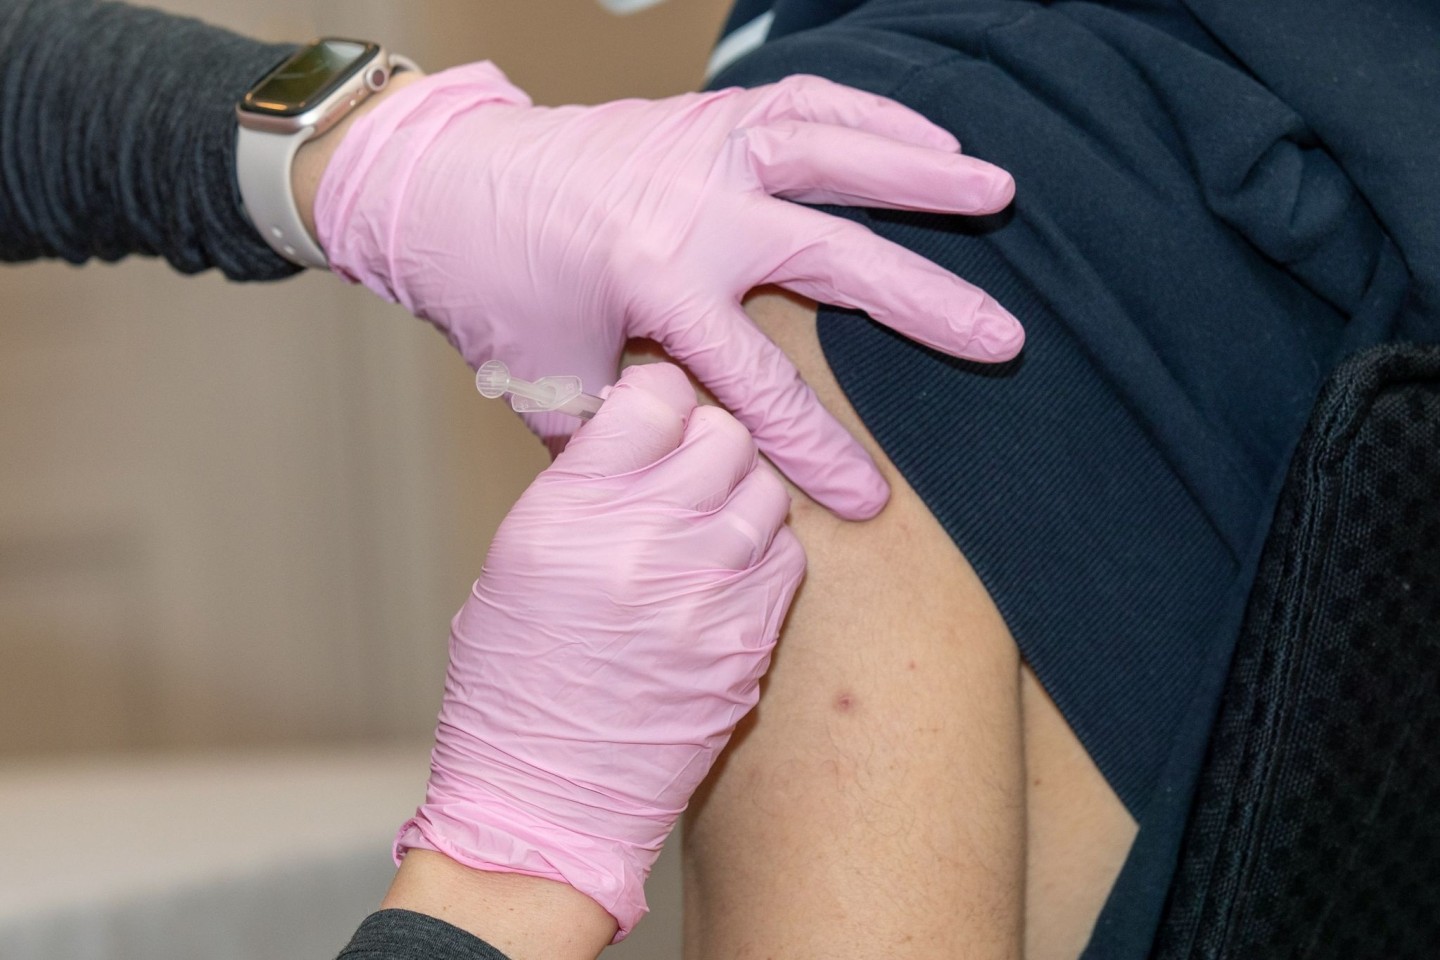 Eine vorläufige Auswertung der südafrikanischen Krankenversicherungsgruppe Discovery weist auf einen merklich verminderten Impfschutz bei der Corona-Variante Omikron hin.